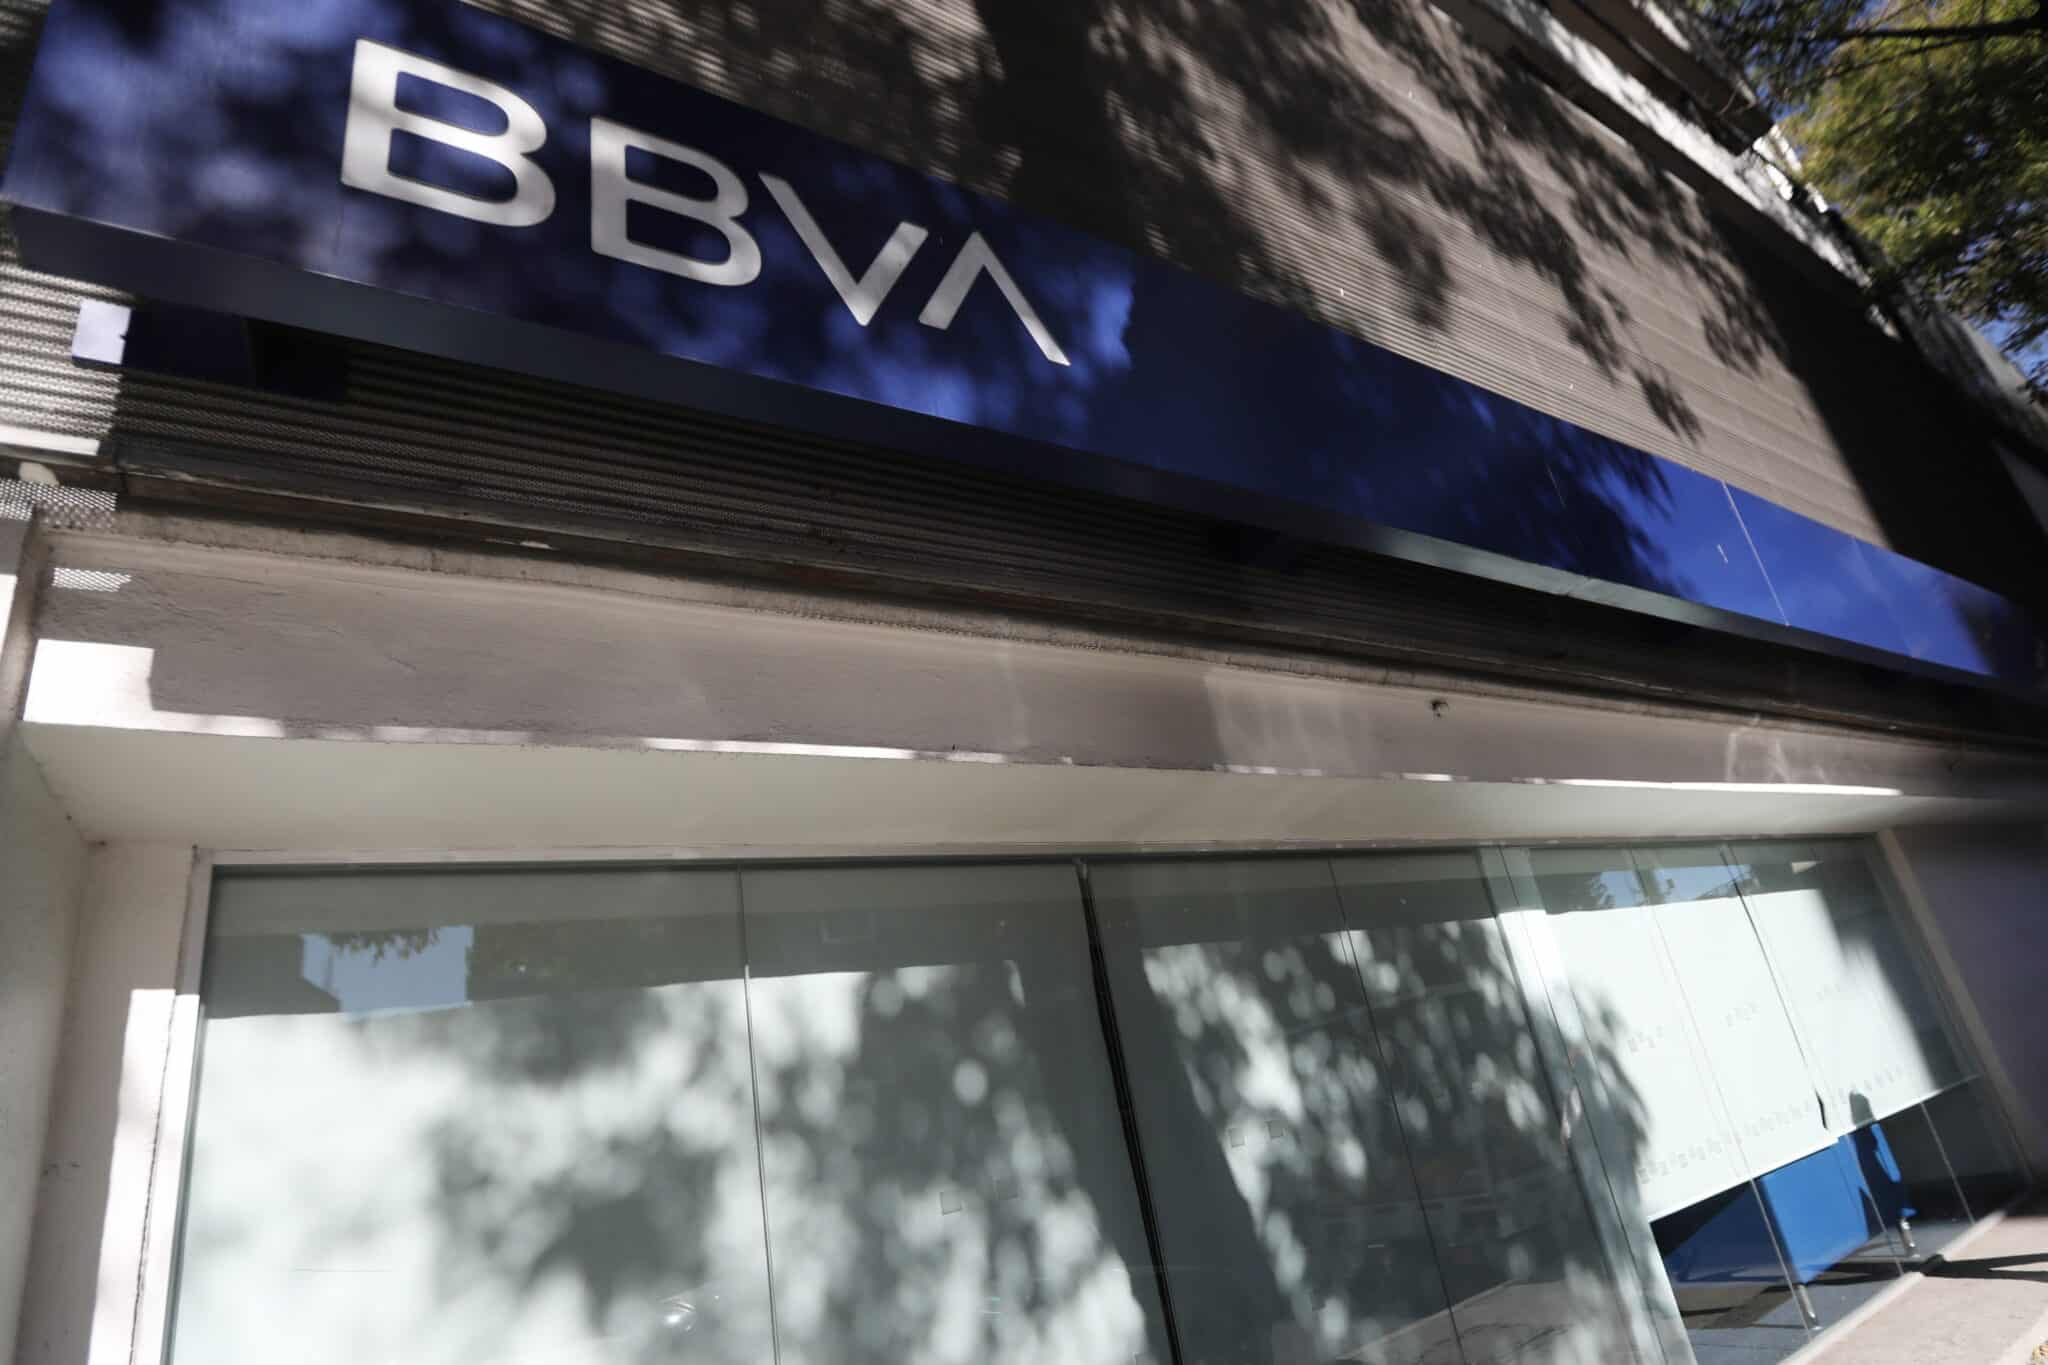 Vista general de la fachada de una sucursal del banco español BBVA